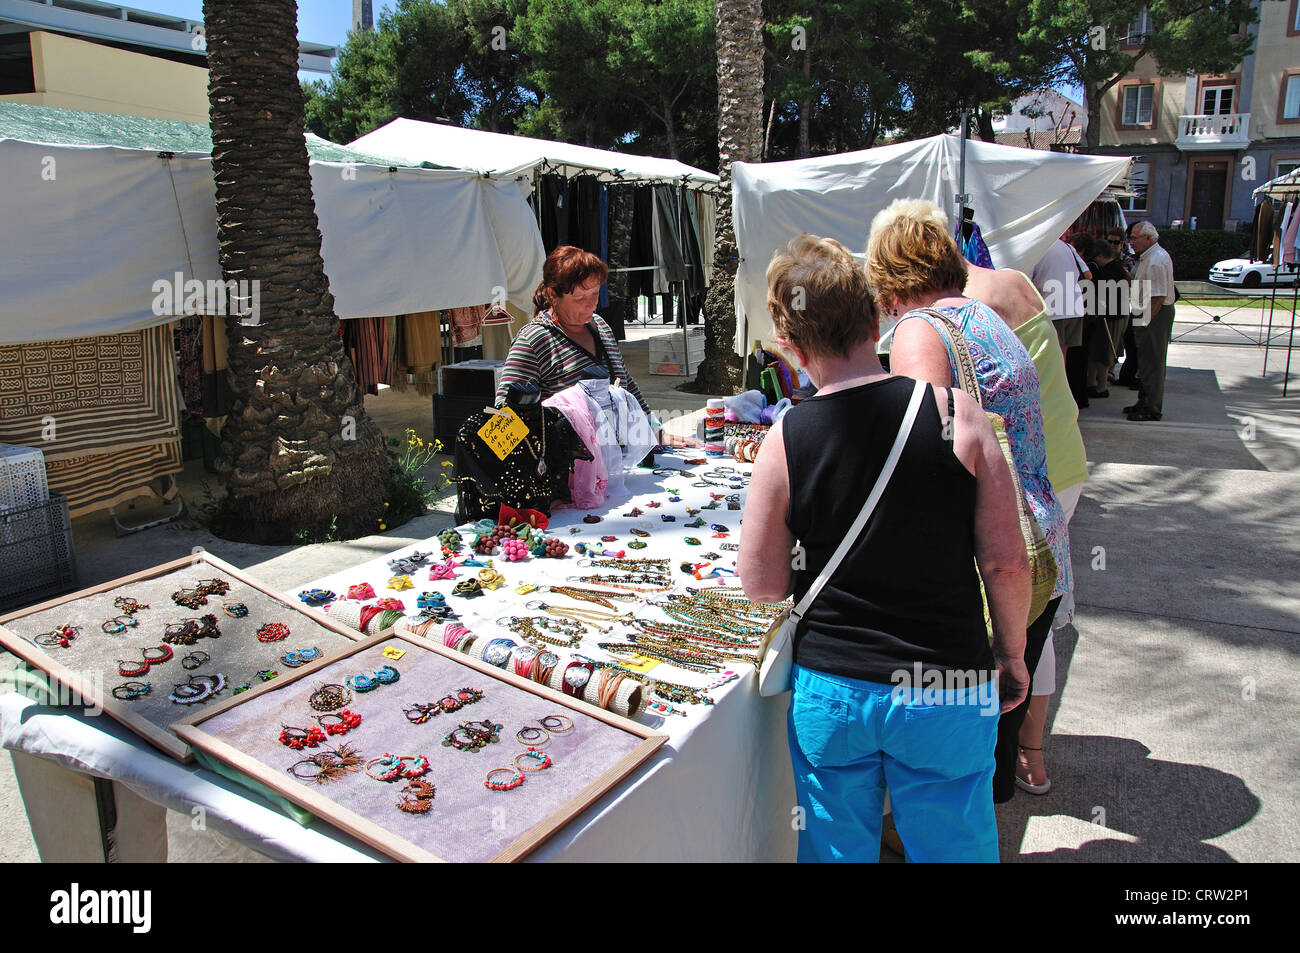 Schmuck-Stall in der Open-Air-Markt am Samstag Handwerk, Plaza Explanada, Mahon, Menorca, Balearen, Spanien Stockfoto